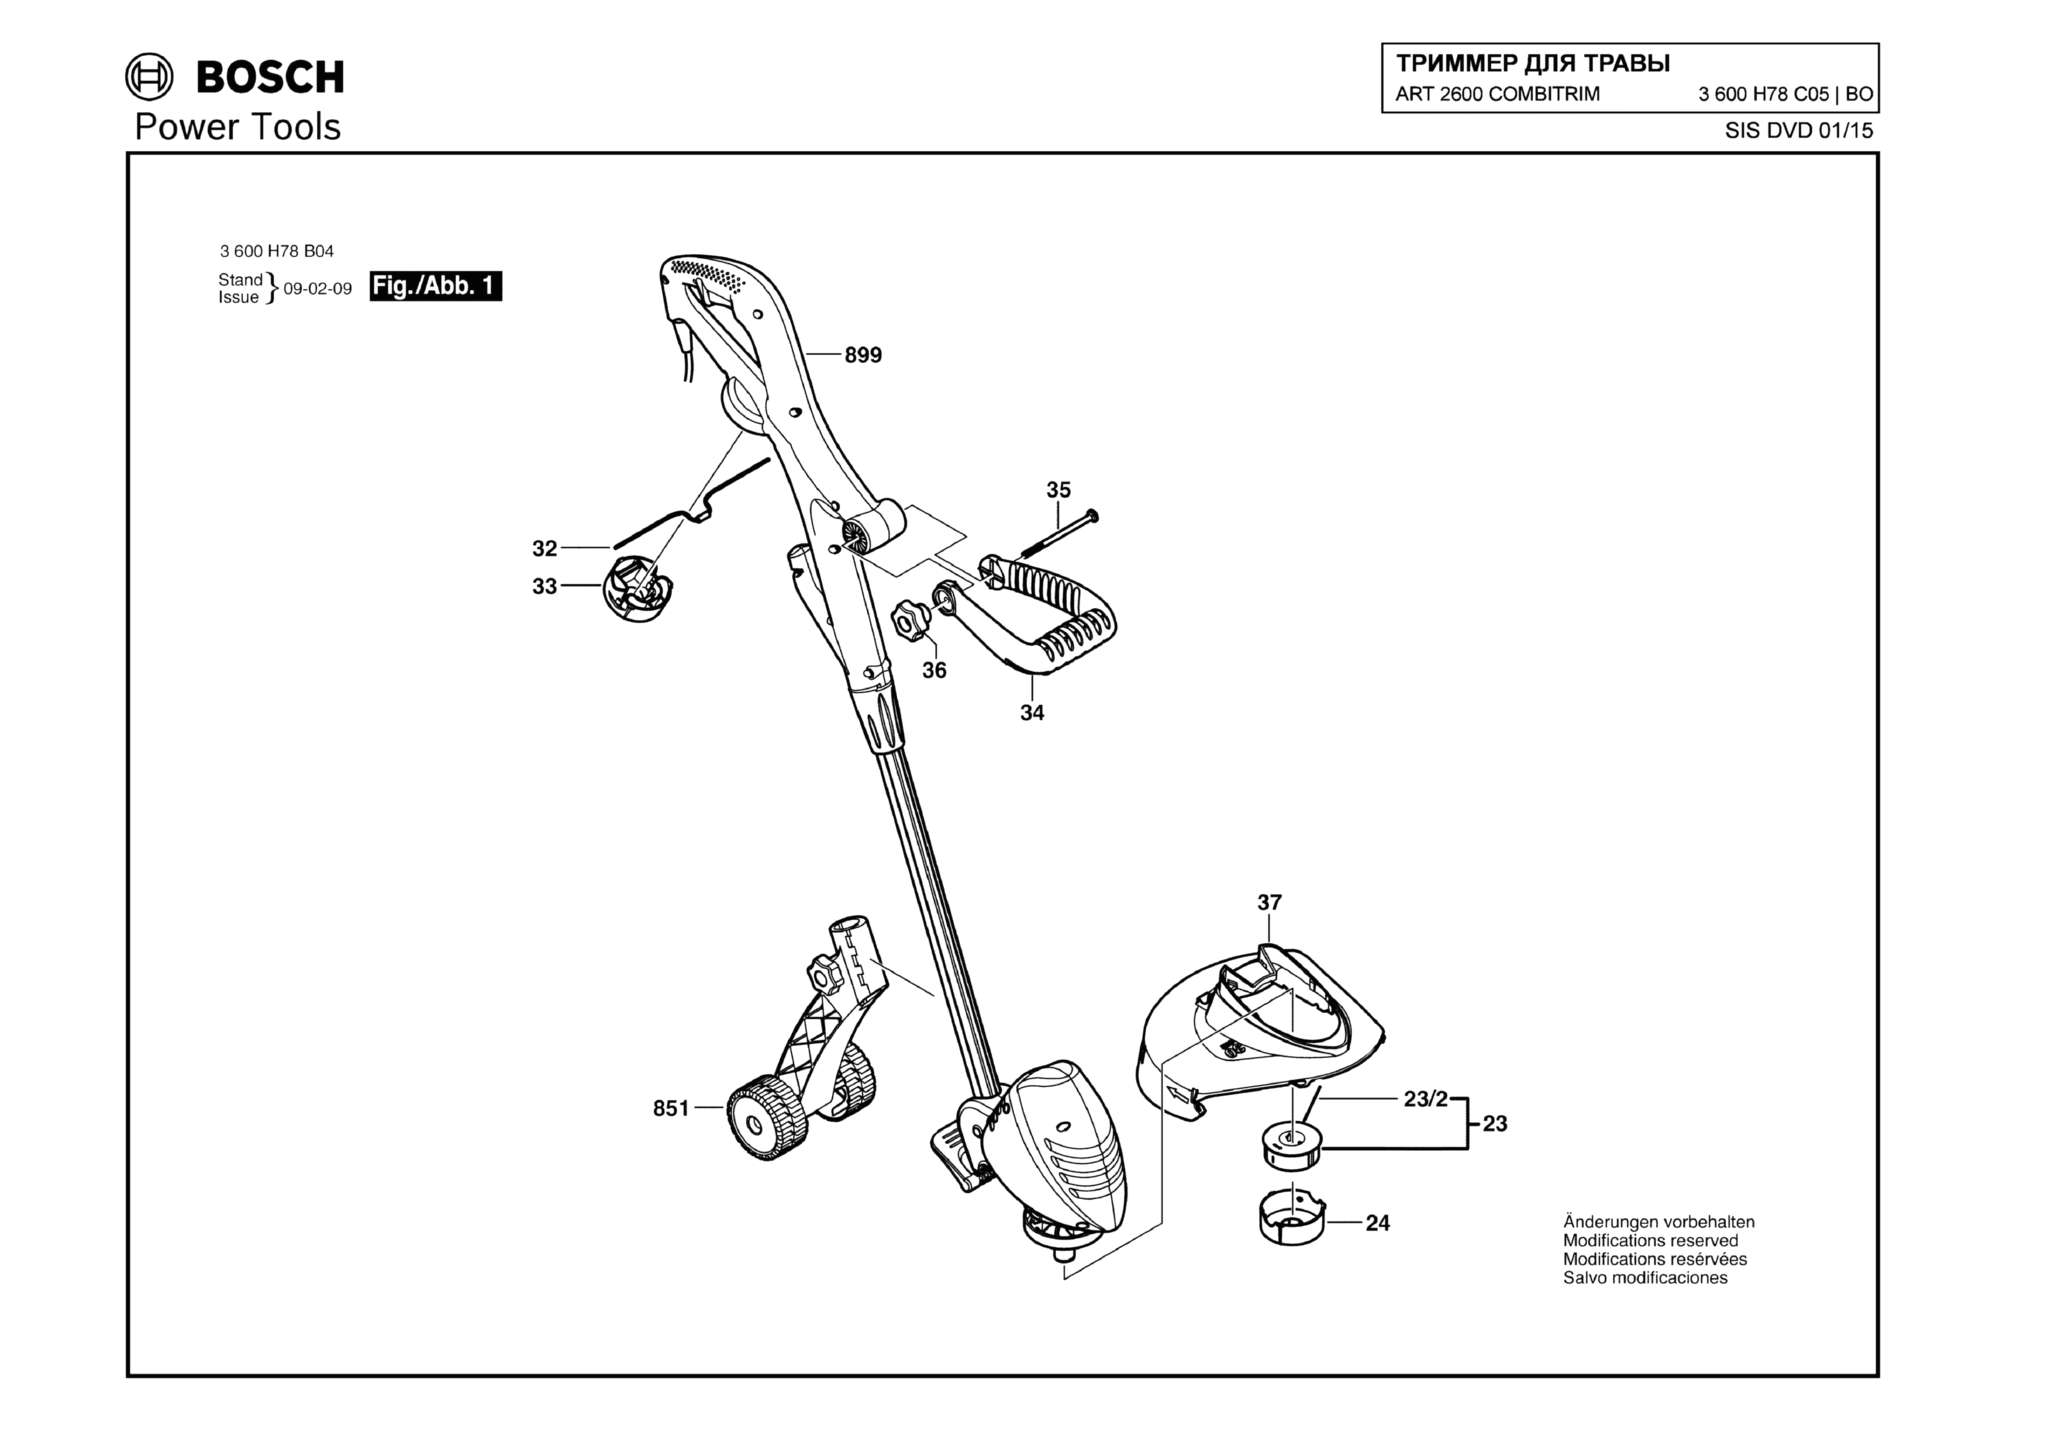 Запчасти, схема и деталировка Bosch ART 2600 COMBITRIM (ТИП 3600H78C05)